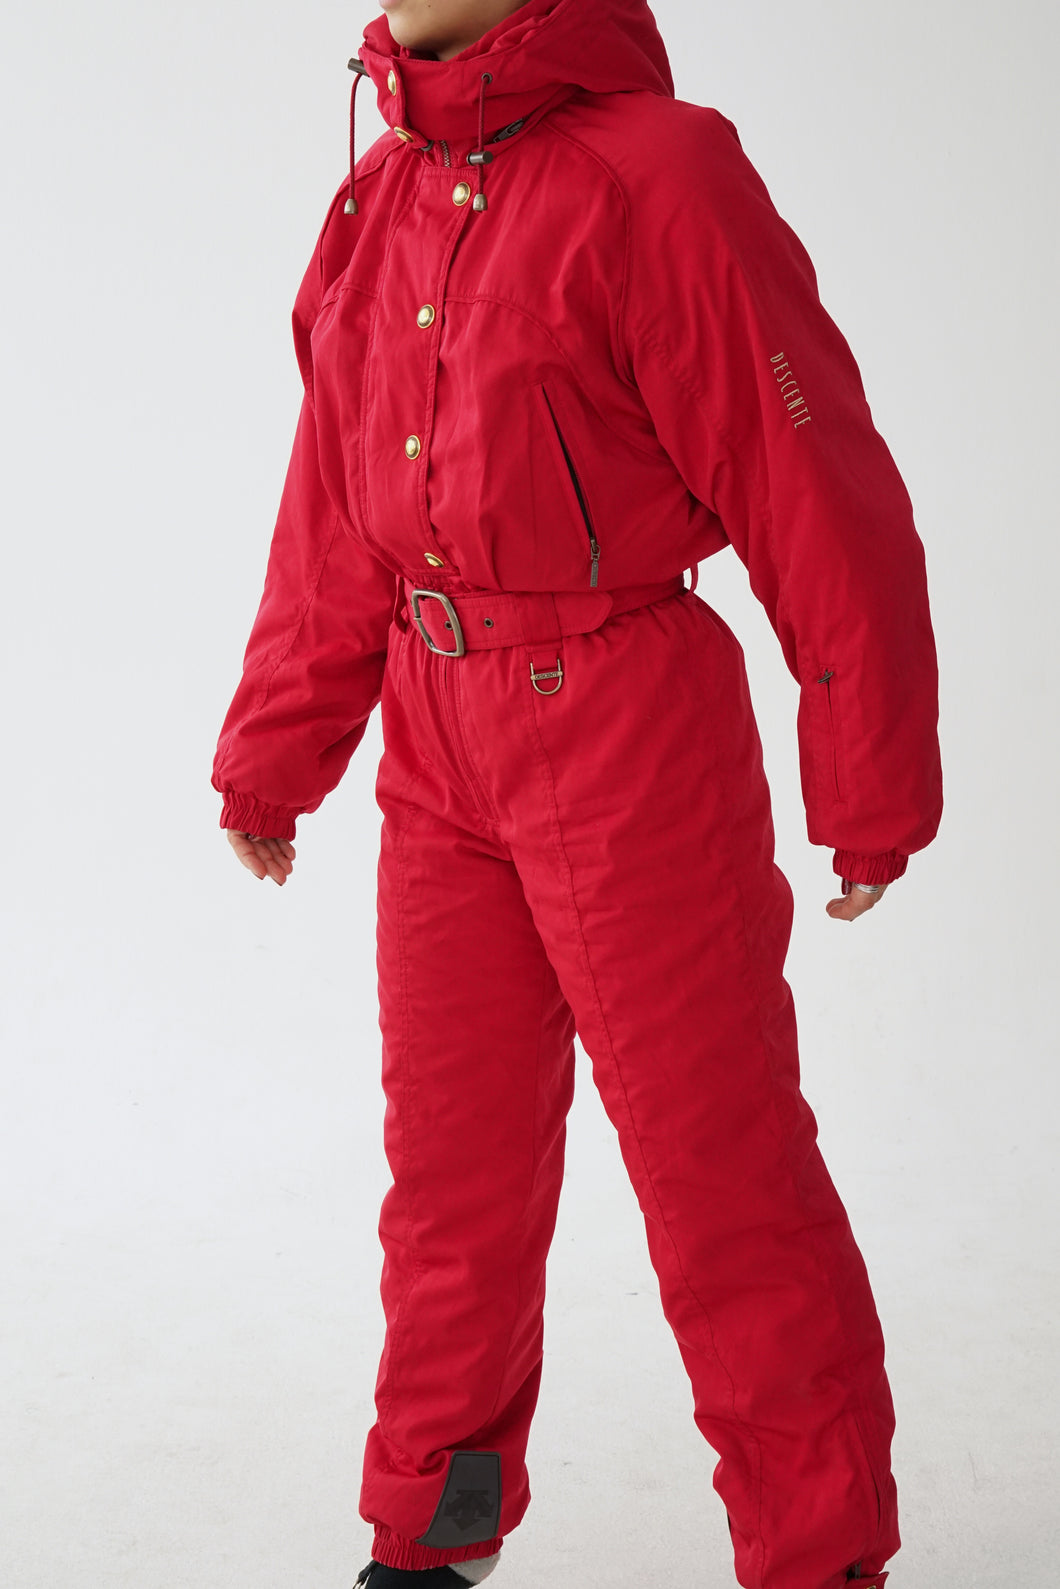 One piece vintage Descente ski suit, snow suit rouge satin pour femme taille 12 (M-L)